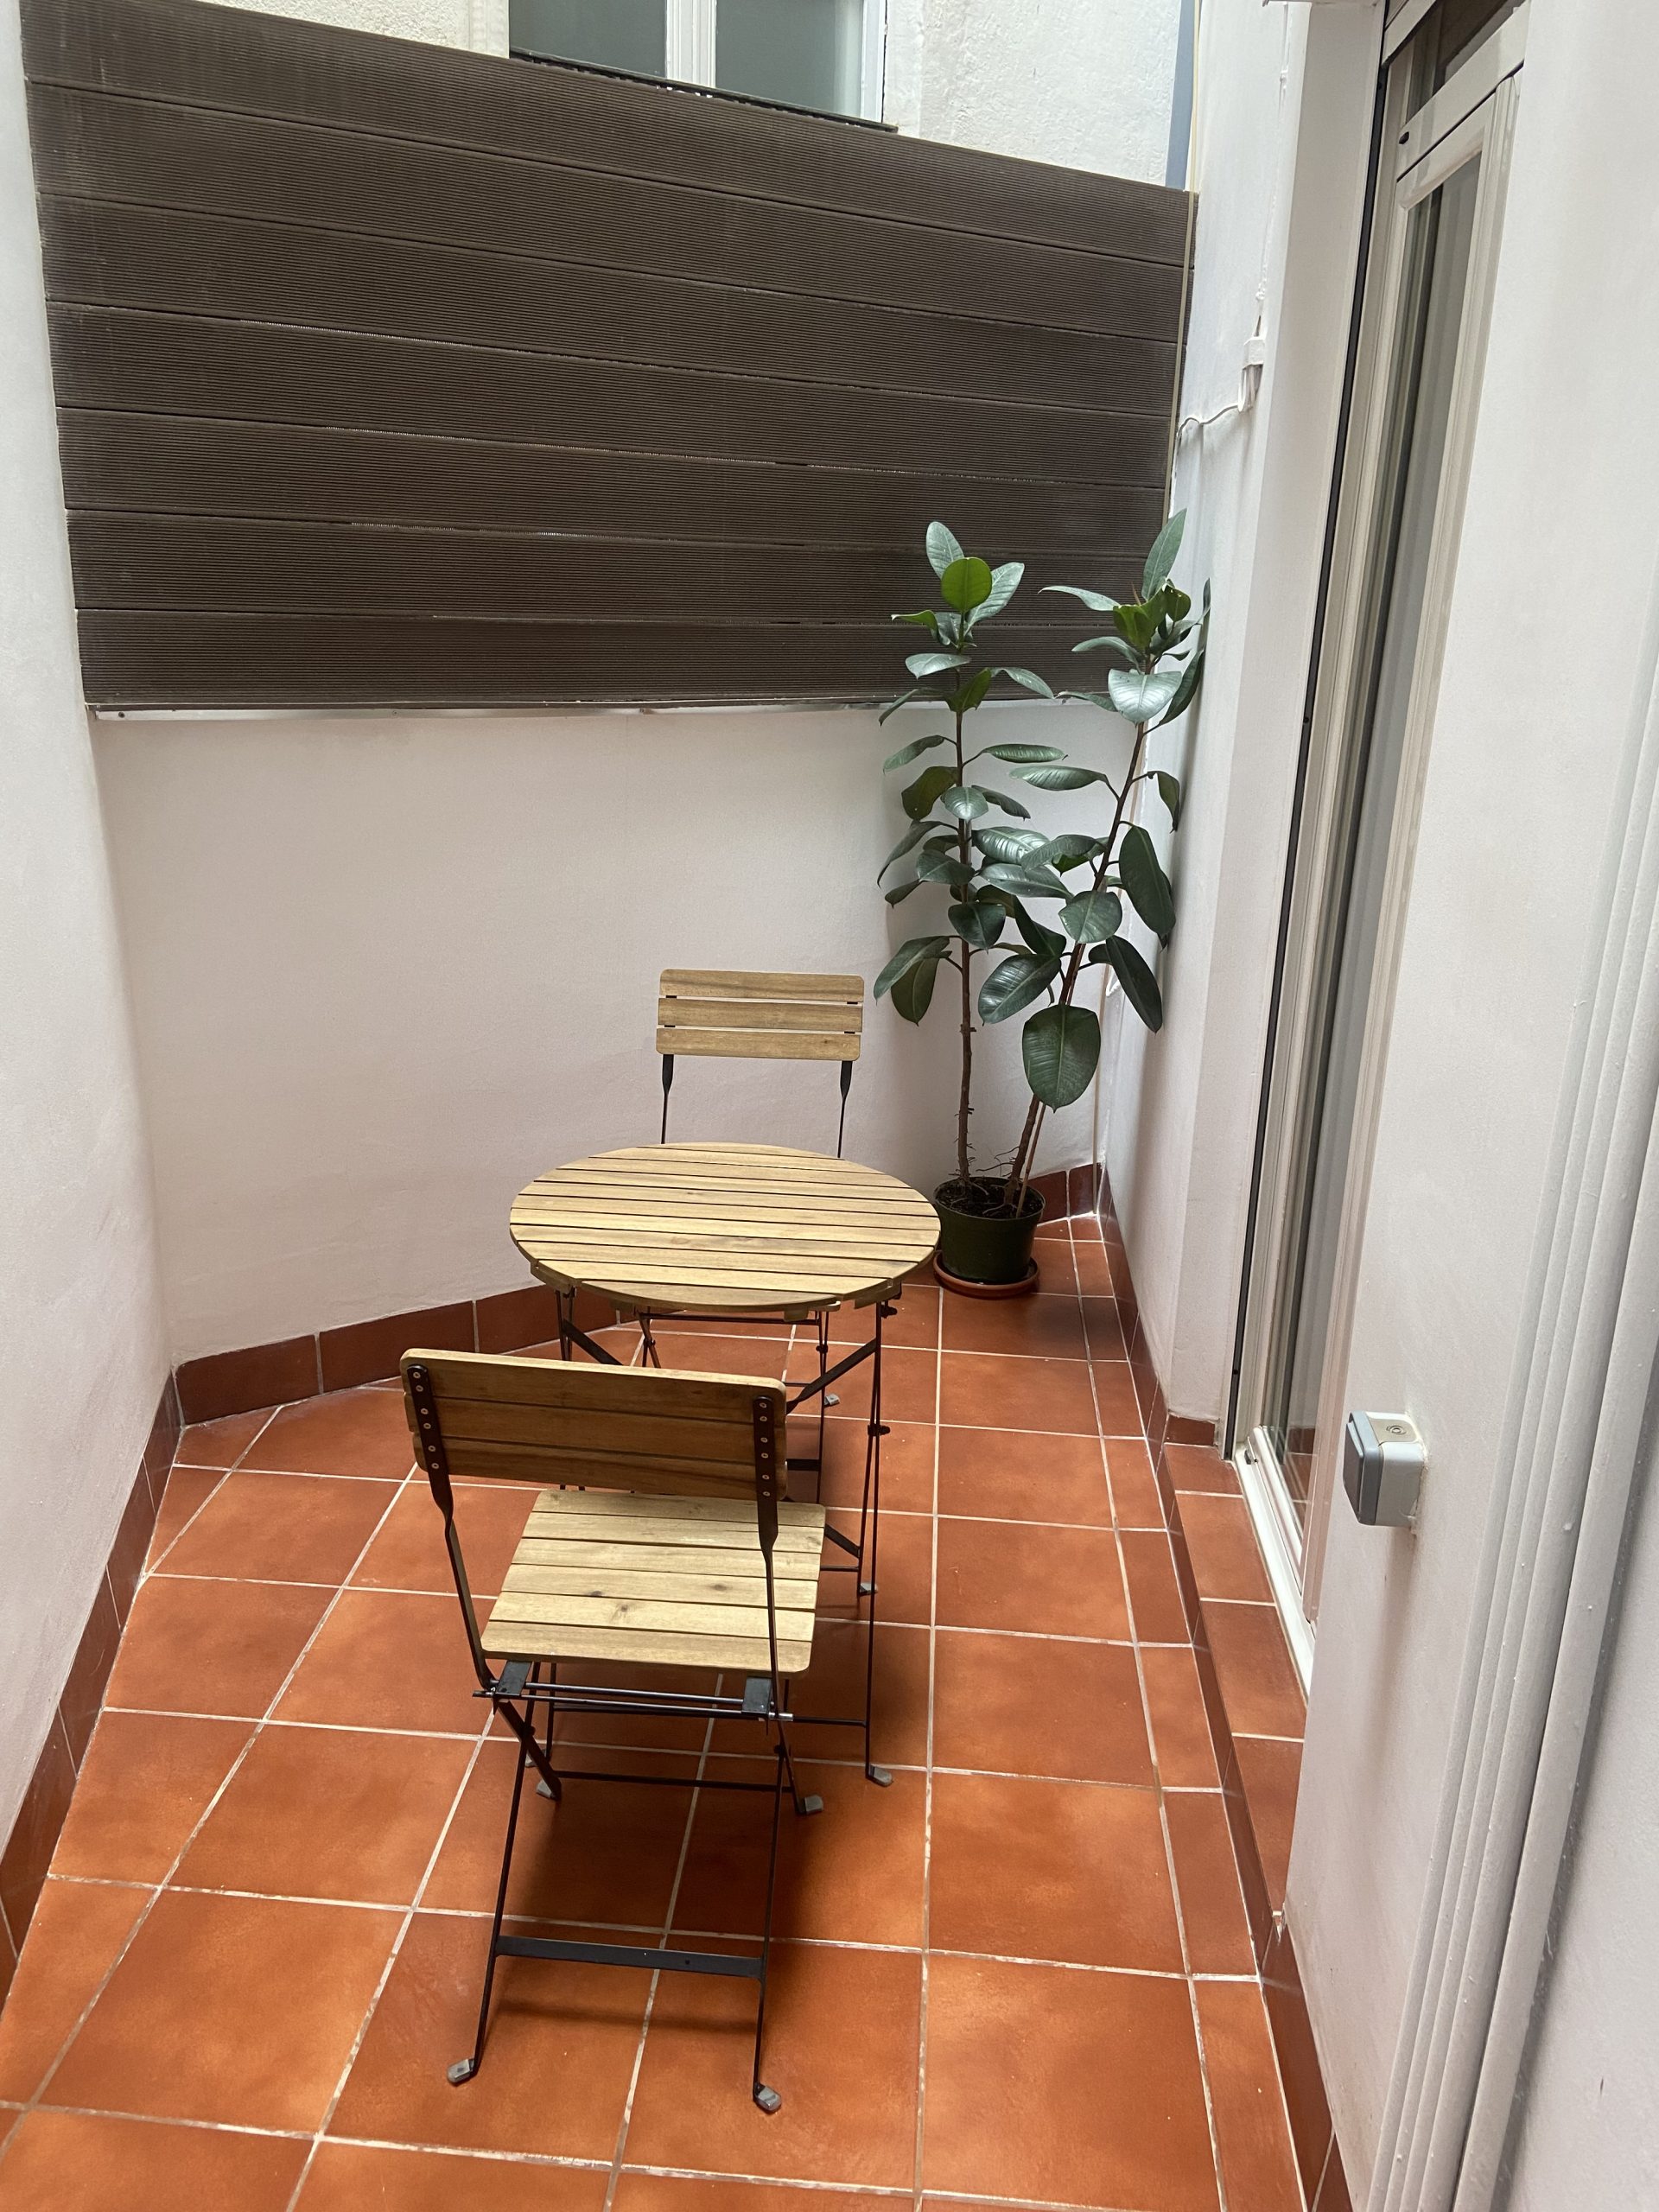 Rental apartment in Las Ramblas Barcelona